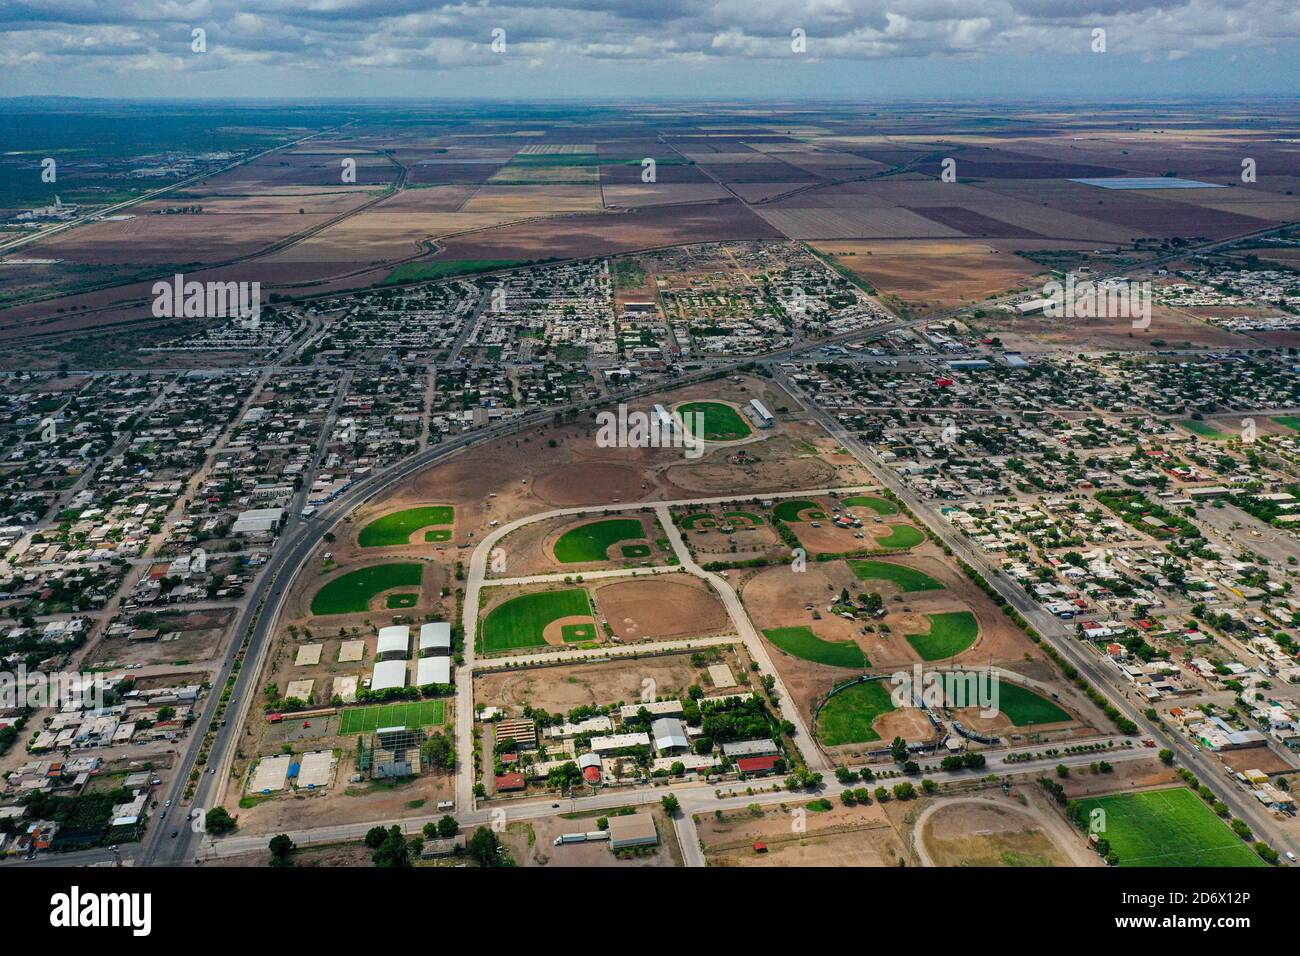 Vue aérienne de Navojoa, Sonora, Mexique. Ville dans la Valle del Mayo.  Contour de la ville, ville, urbanité, maisons, quartiers, subdivisions,  résidentiel. Unité sportive, terrains de sport, terrains de baseball © (©